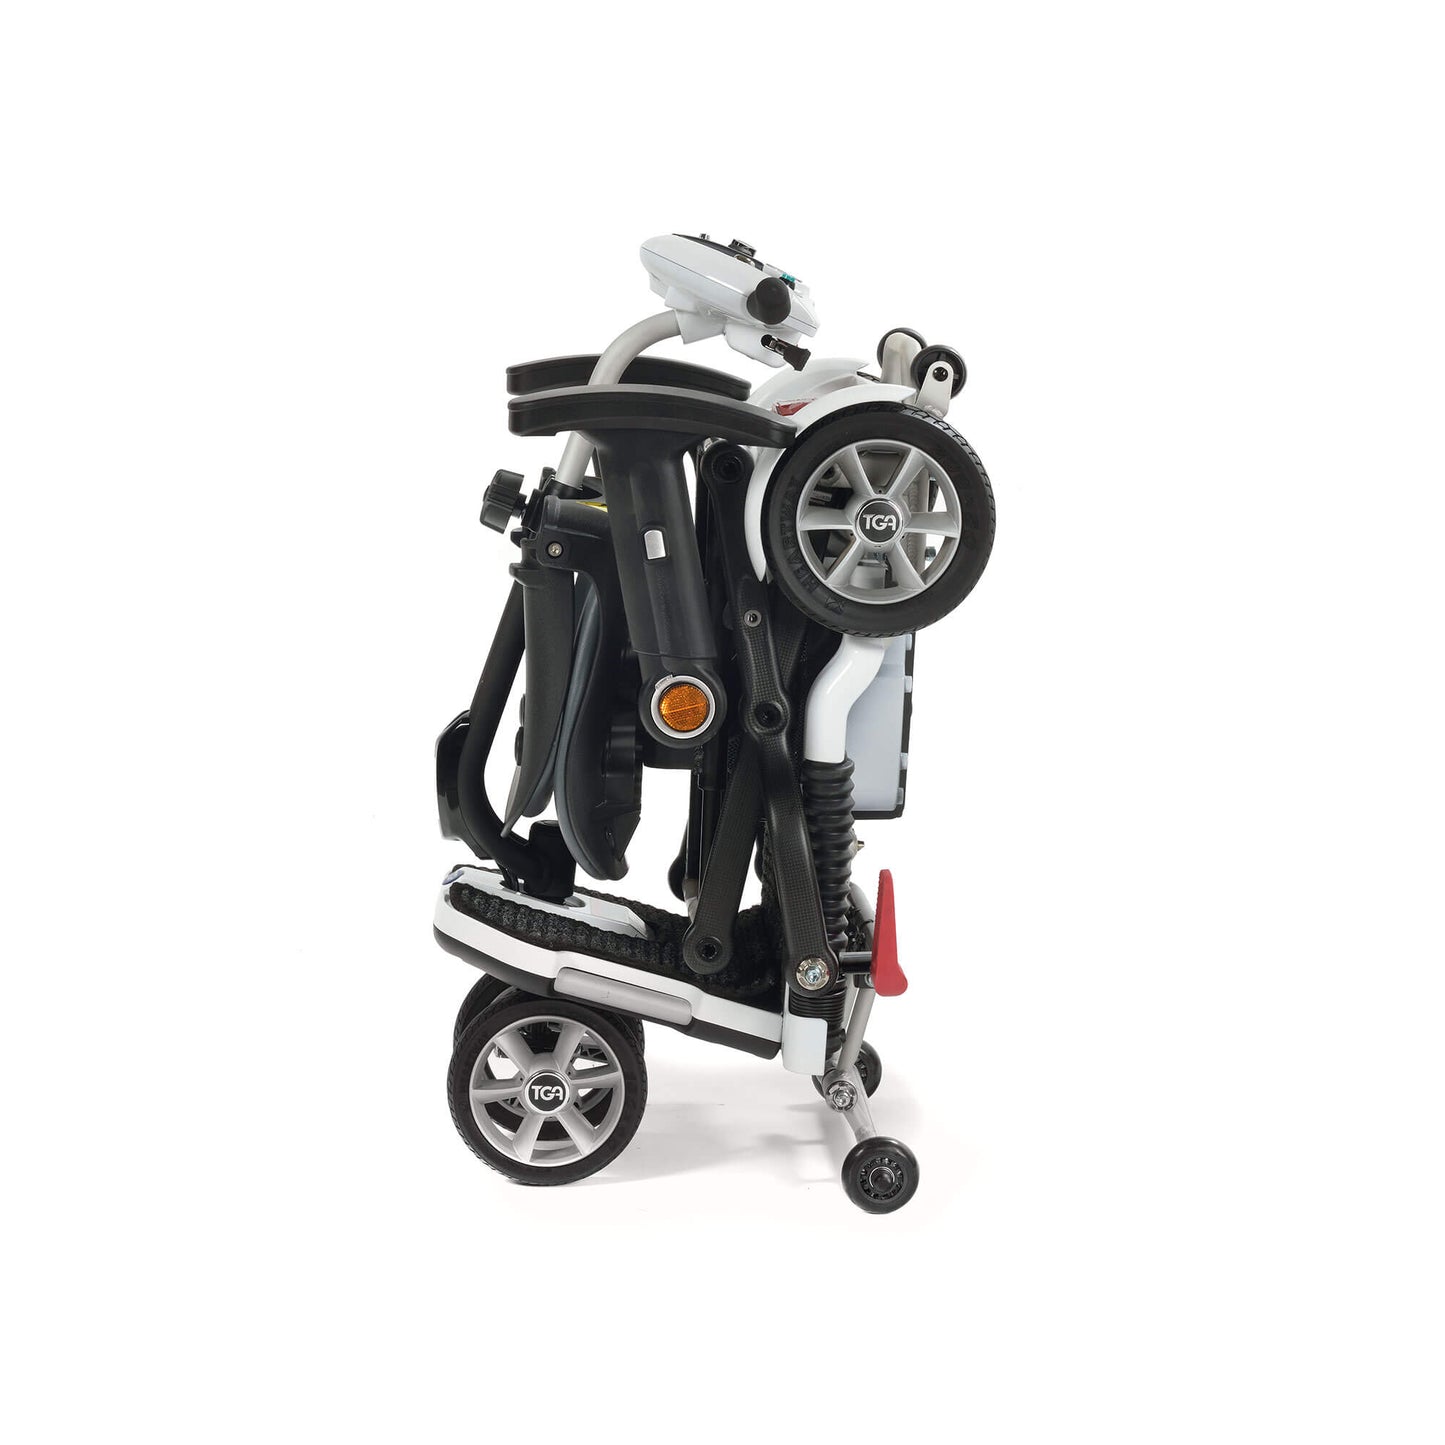 Minimo Electric Mobility Scooter with Seat – Warm Bronze Metallic & Polar White Metallic